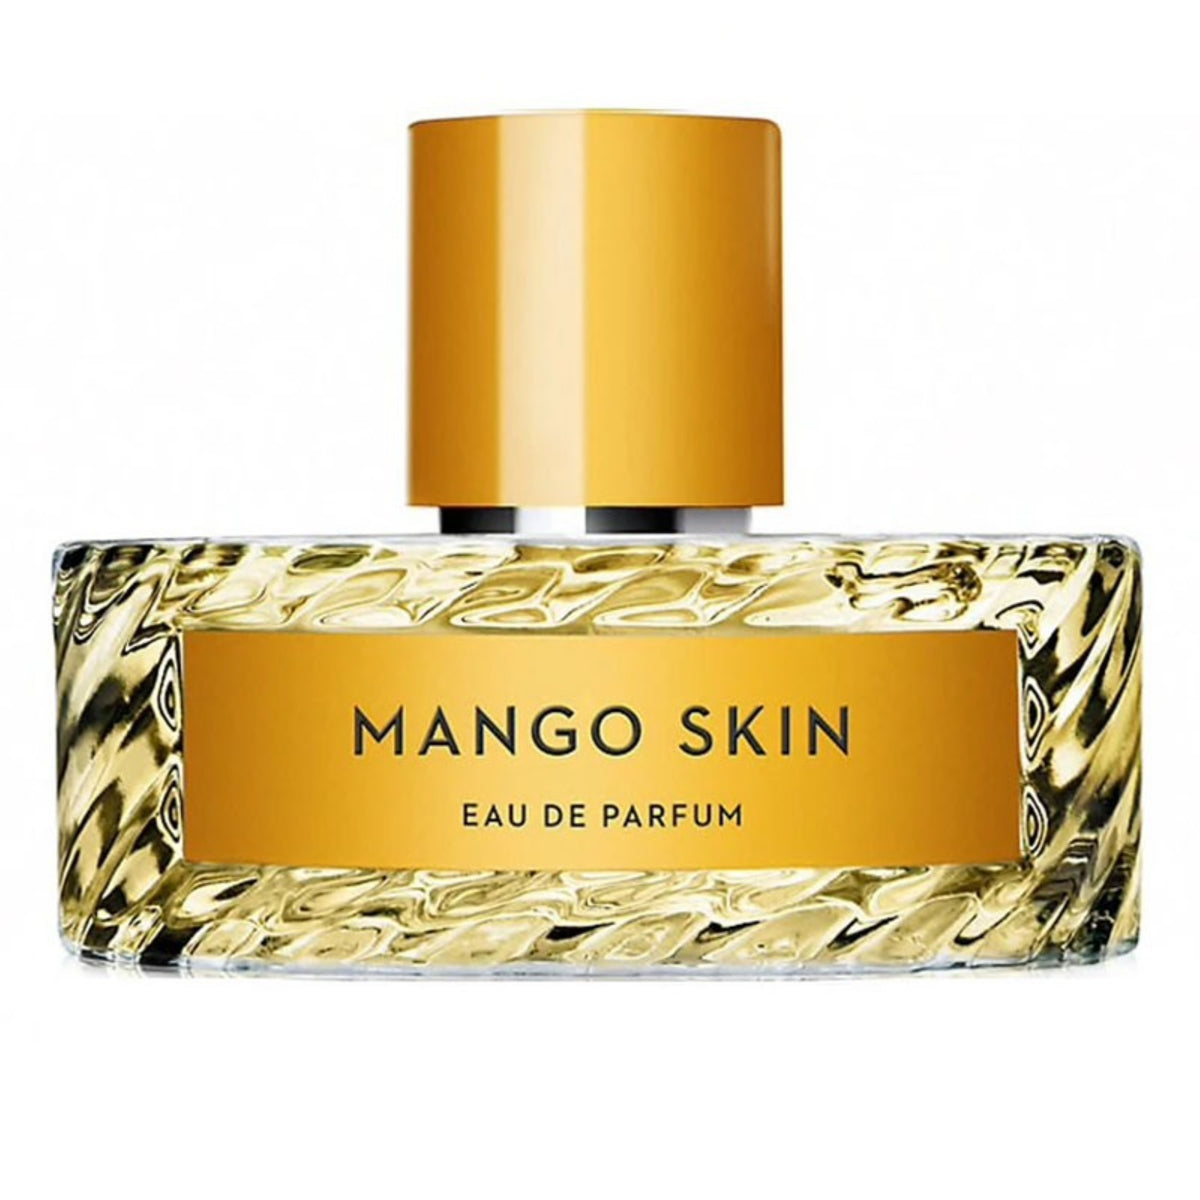  VILHELM PARFUMERIE Mango Skin Eau de Parfum, E11 Store